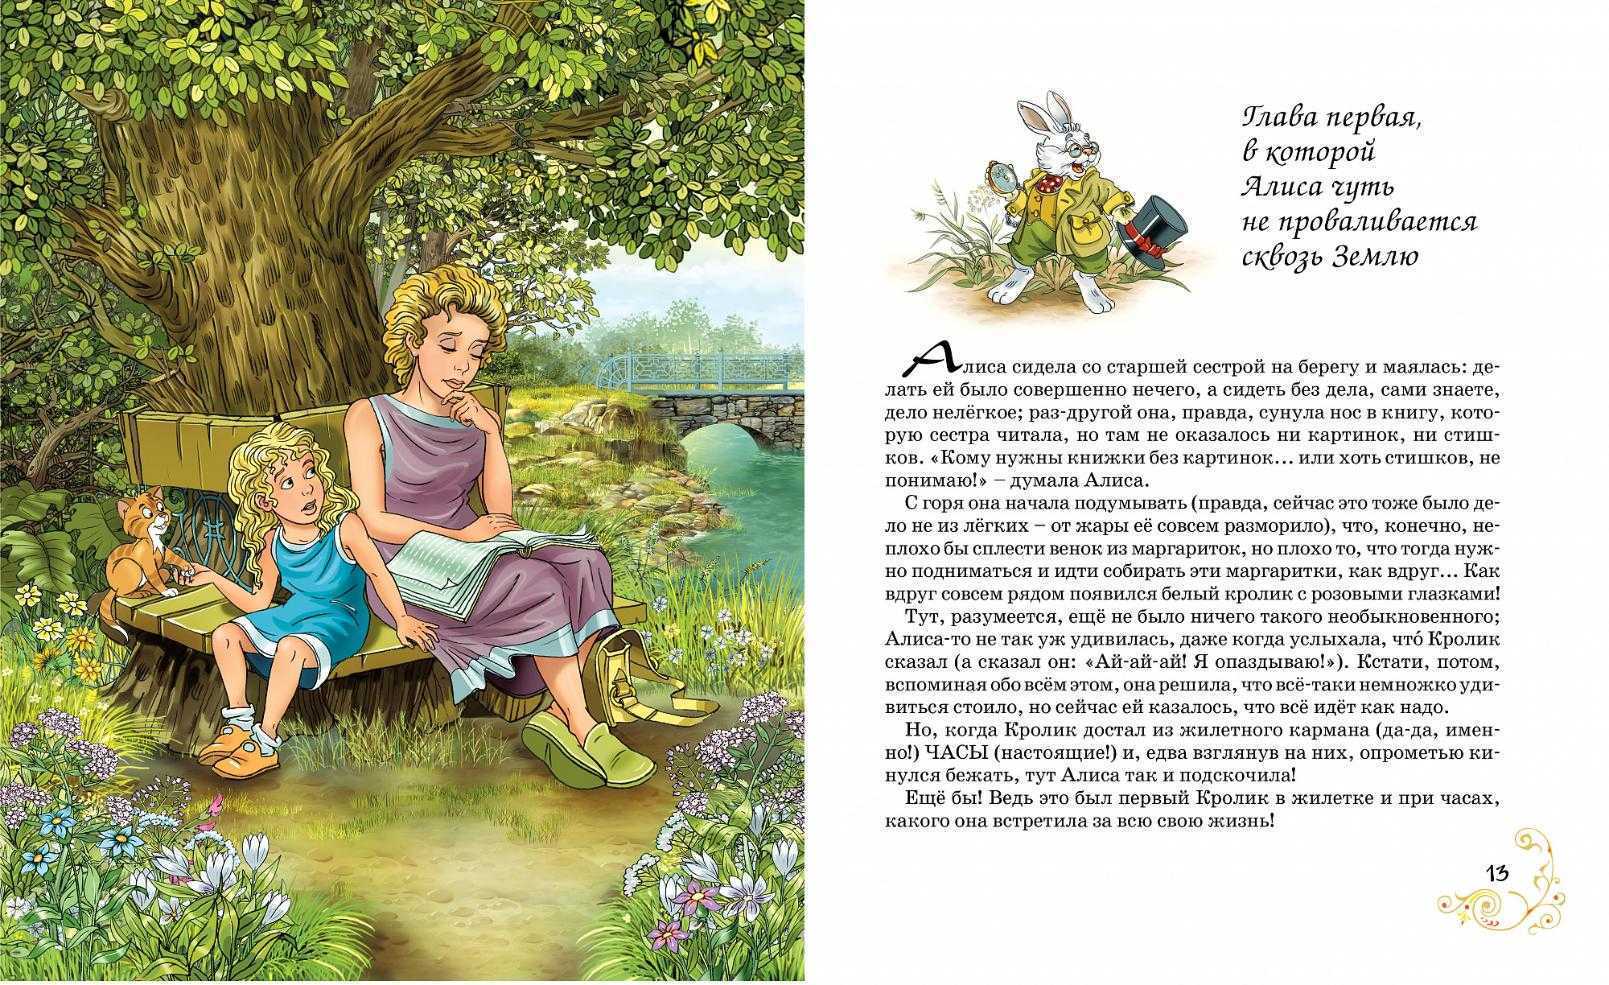 Читать 1 и тоже. Сказка Льюиса Кэрролла Алиса в стране чудес. Рассказ про Алиса чудес. Алиса в стране чудес предисловие. Рассказ Алиса в стране чудес читать.